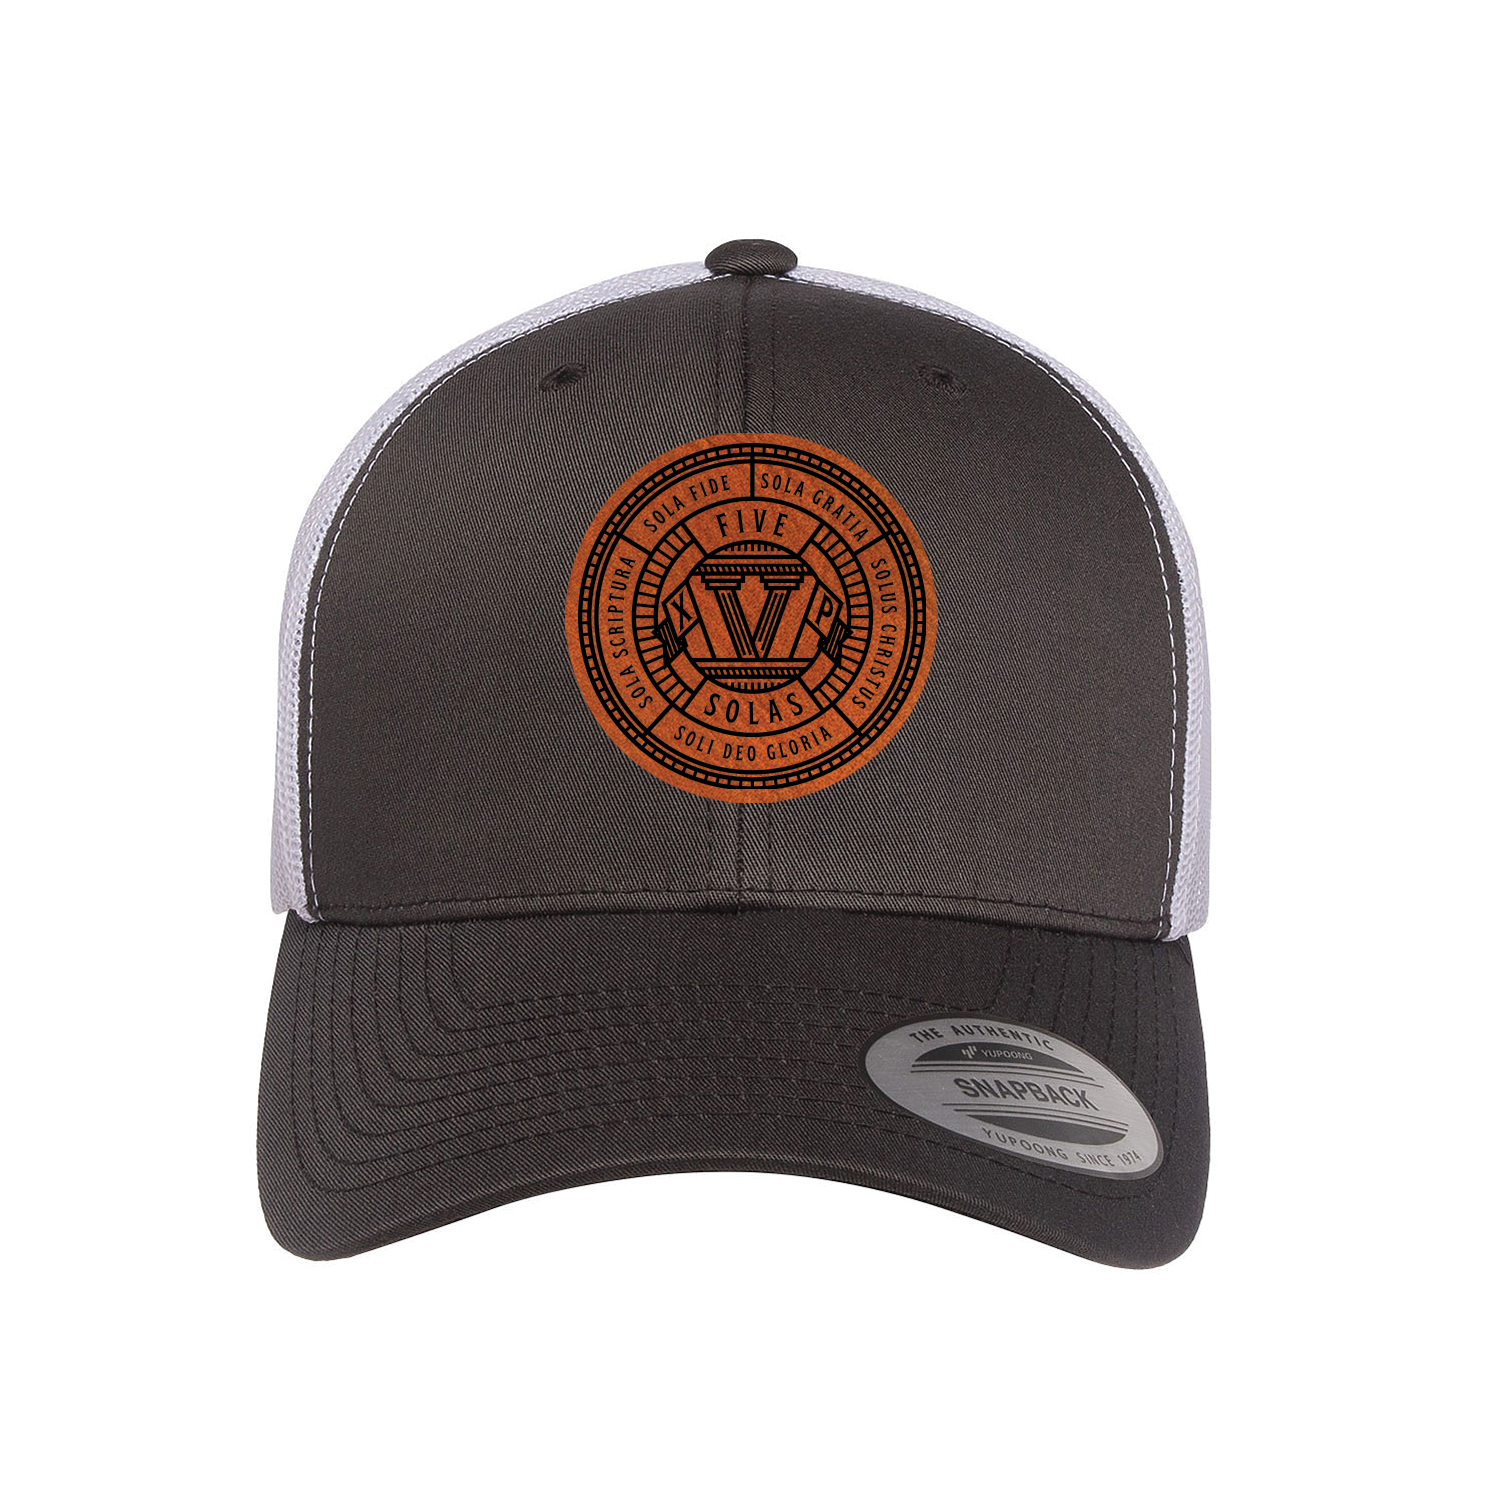 Five Solas Badge Trucker Hat | Missional Wear